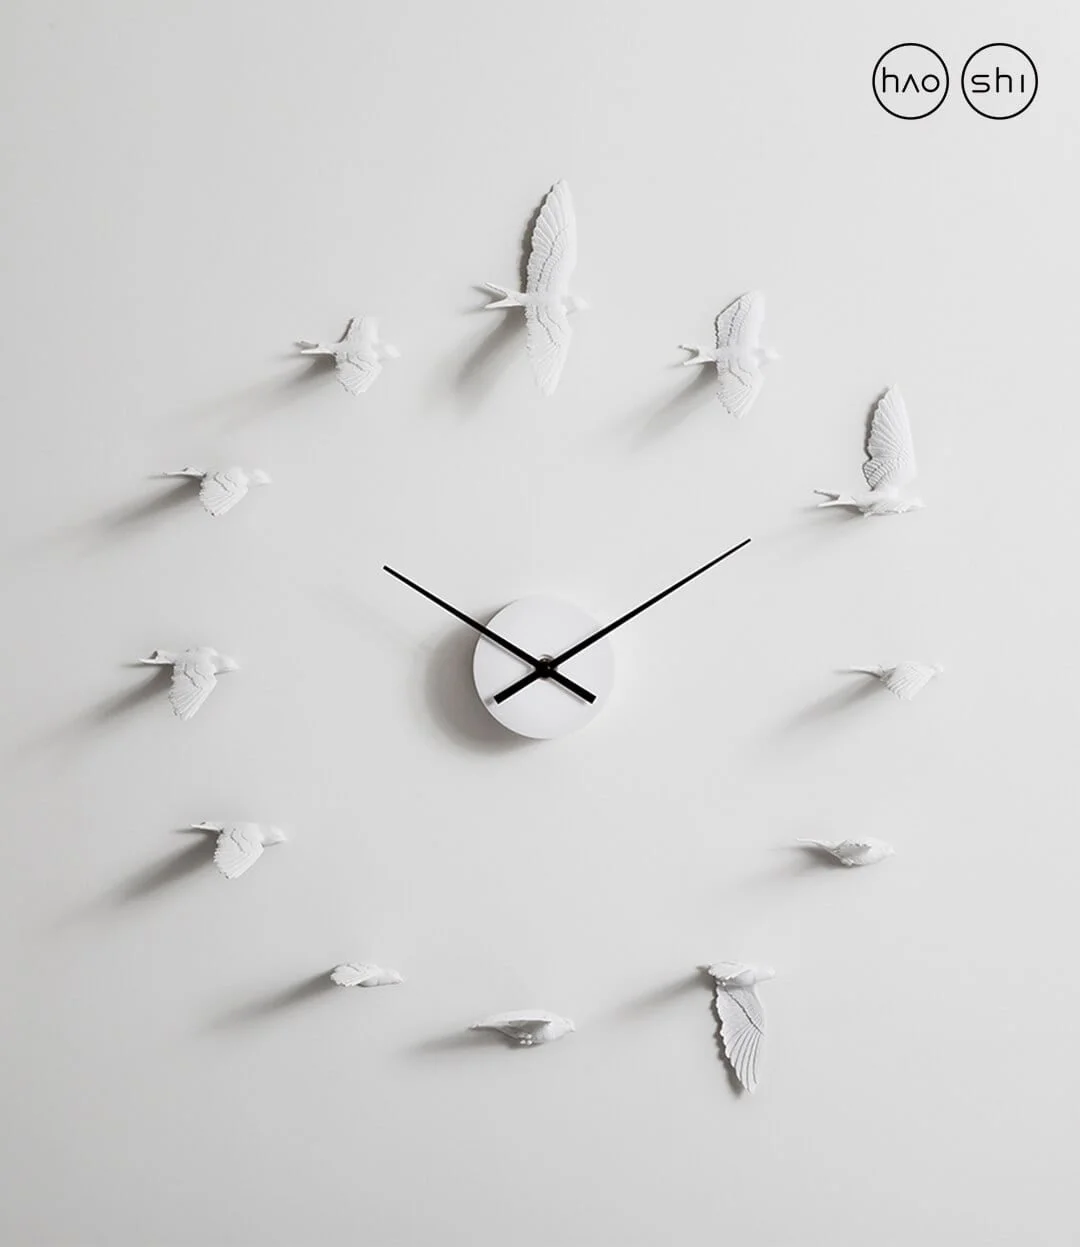 Swallow X Clock by Haoshi 